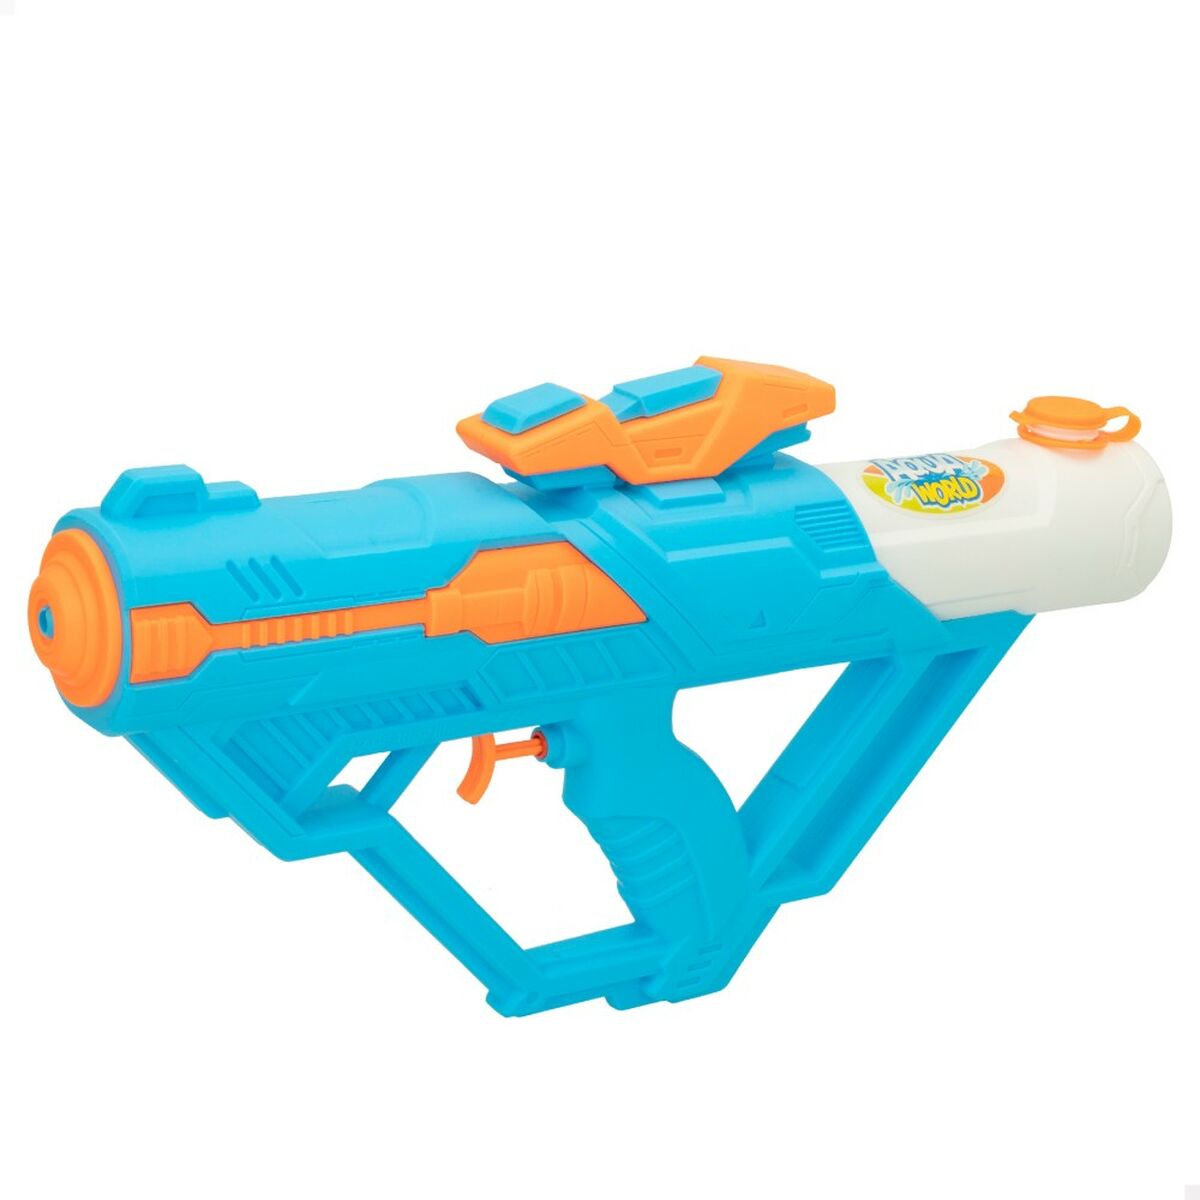 Pistola ad Acqua Colorbaby 38 x 20 x 6,5 cm (12 Unità) Azzurro Arancio